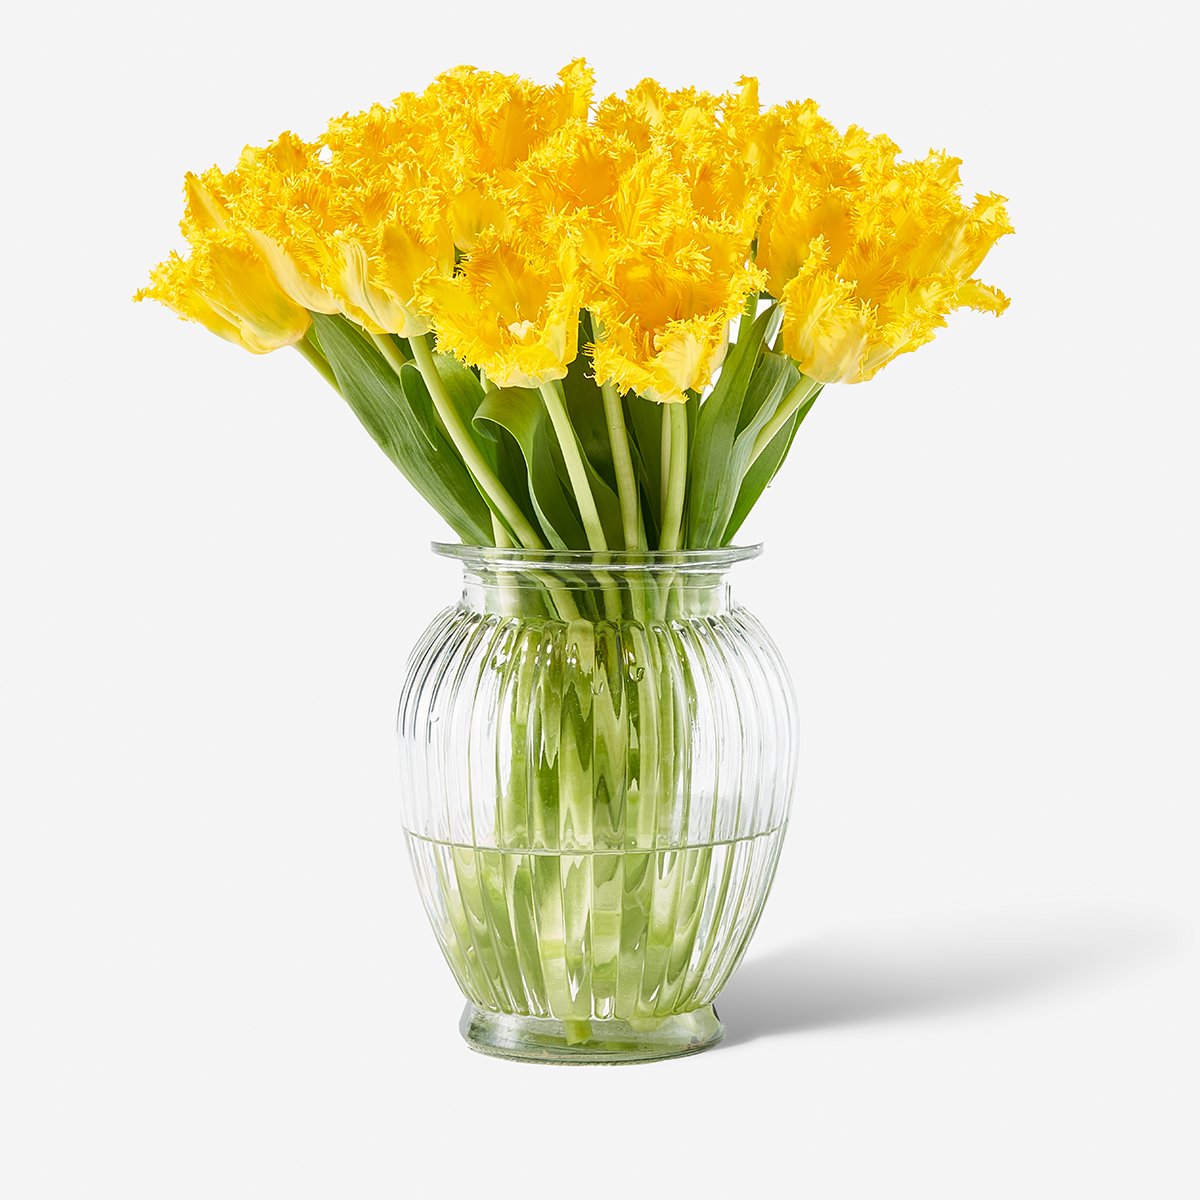 yellow fringed tulips 2.jpg